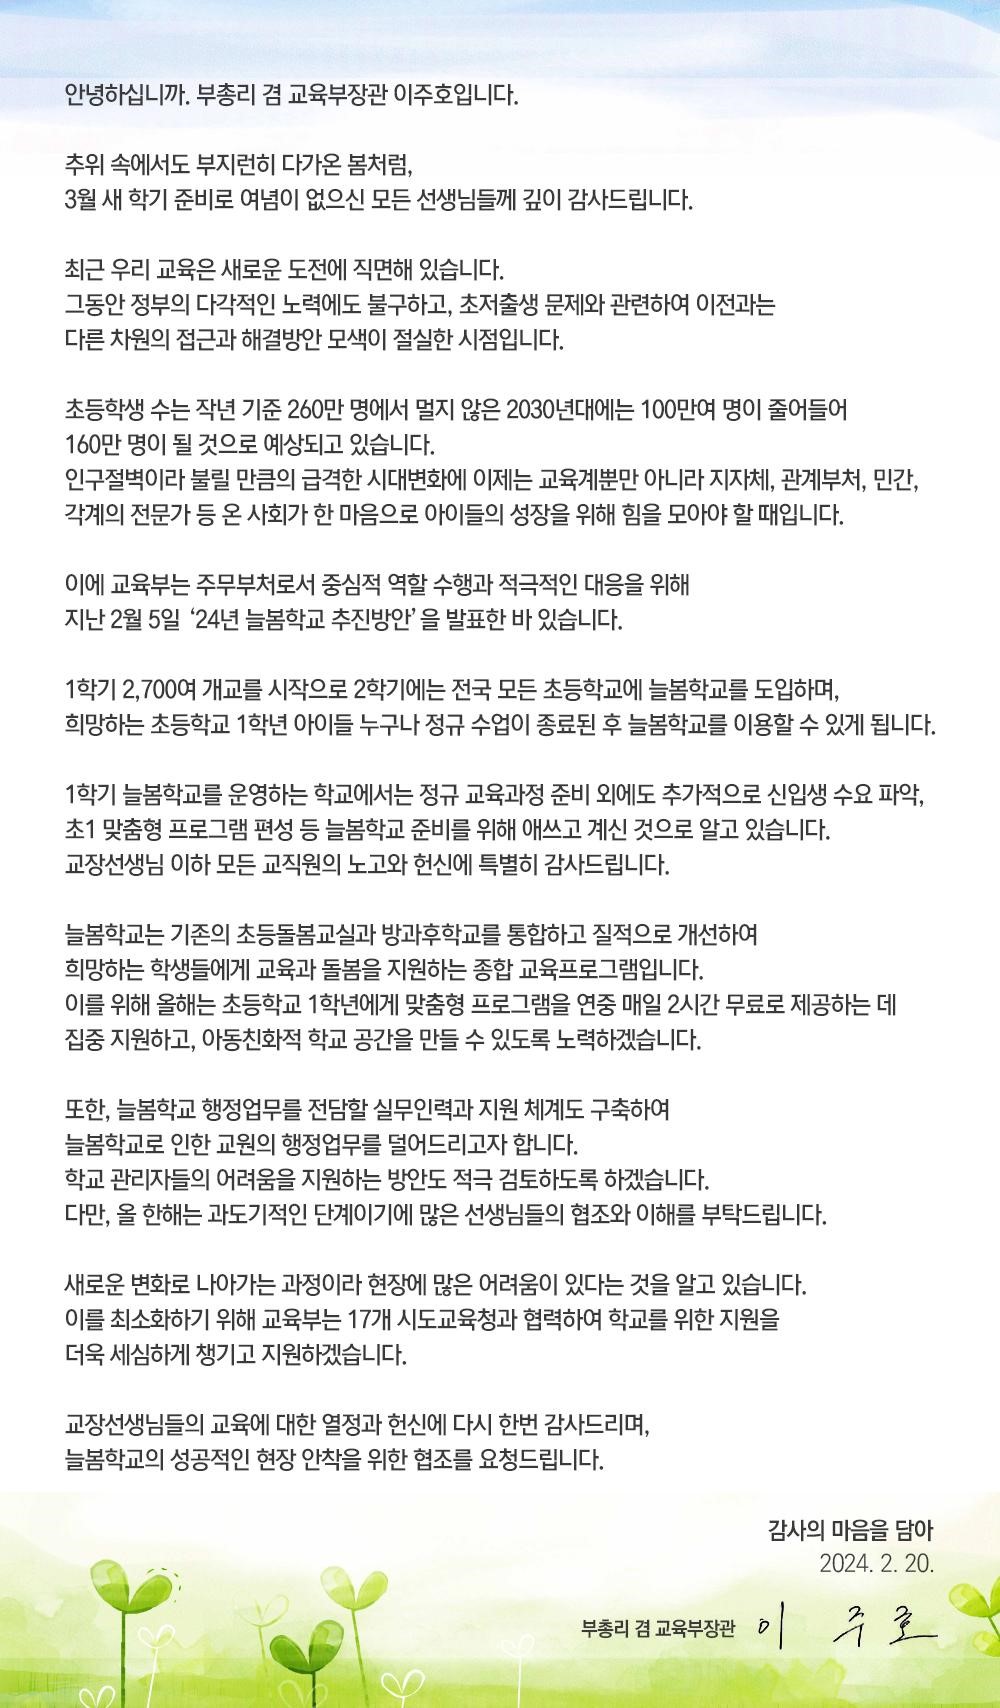 [서한문]늘봄학교 운영준비 관련 부총리 감사 서한문